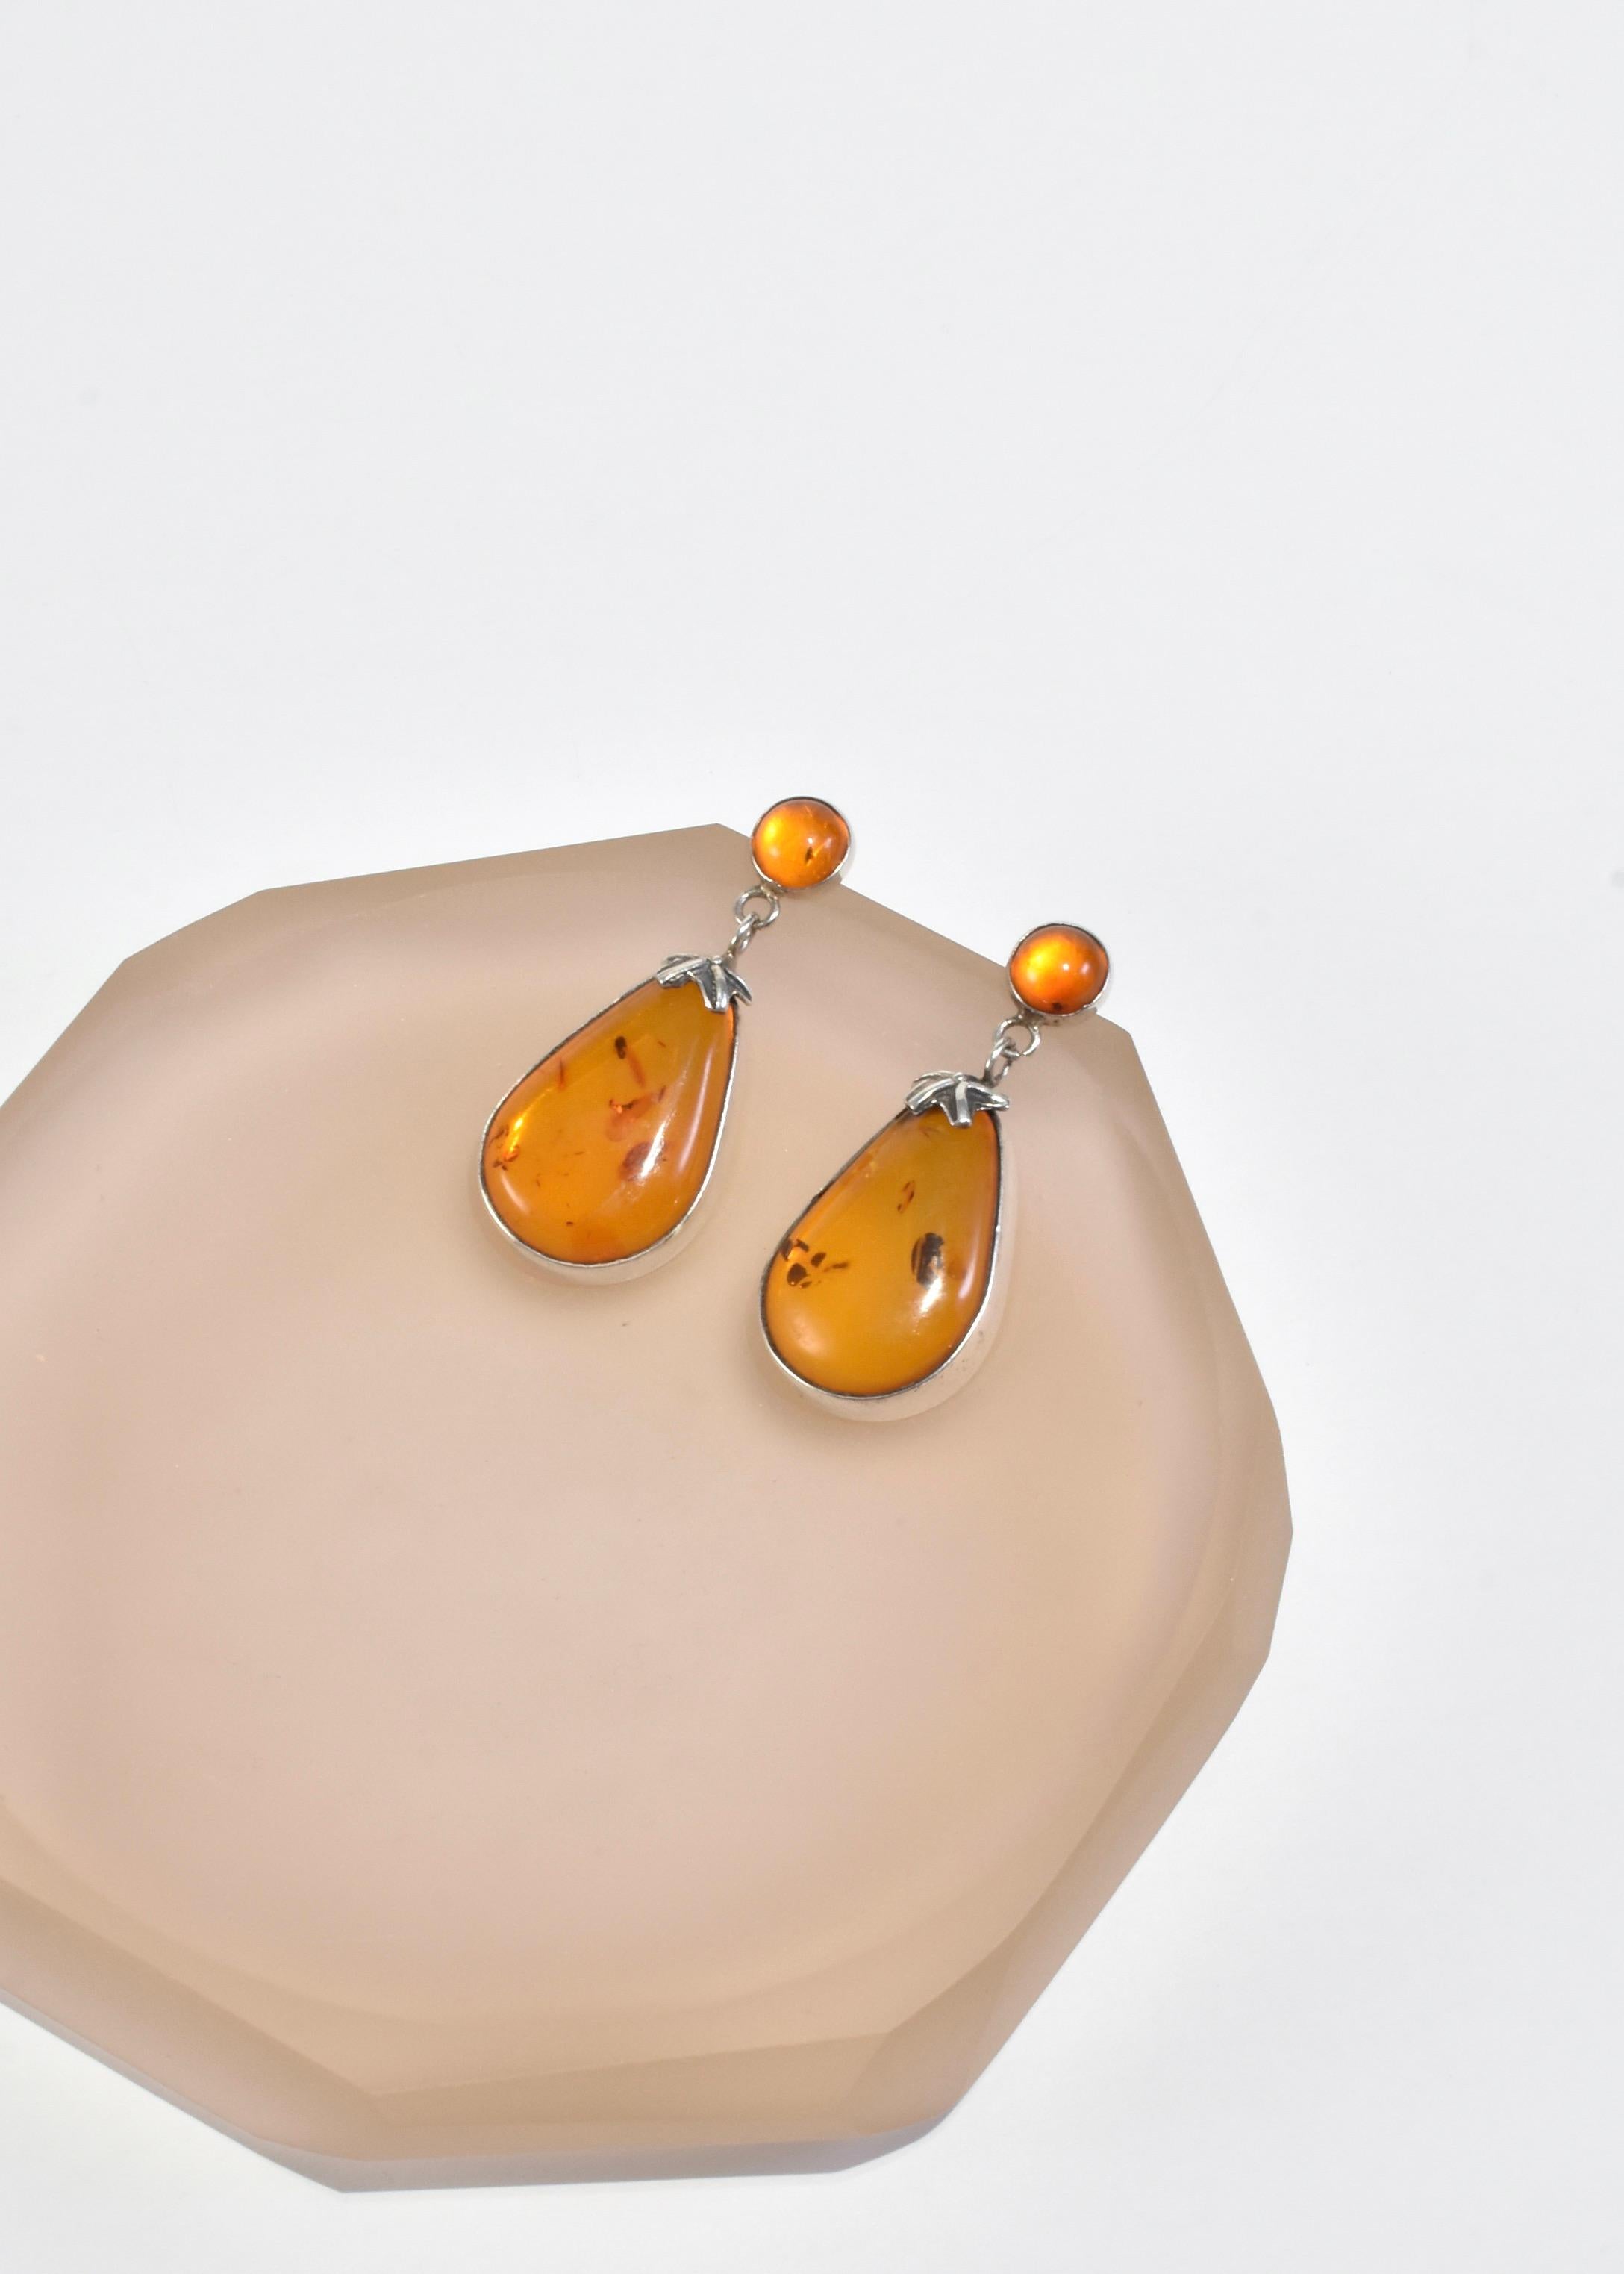 Superbes boucles d'oreilles vintage en argent avec de belles pierres d'ambre baltique polies, percées.

Matière : Argent sterling, ambre.